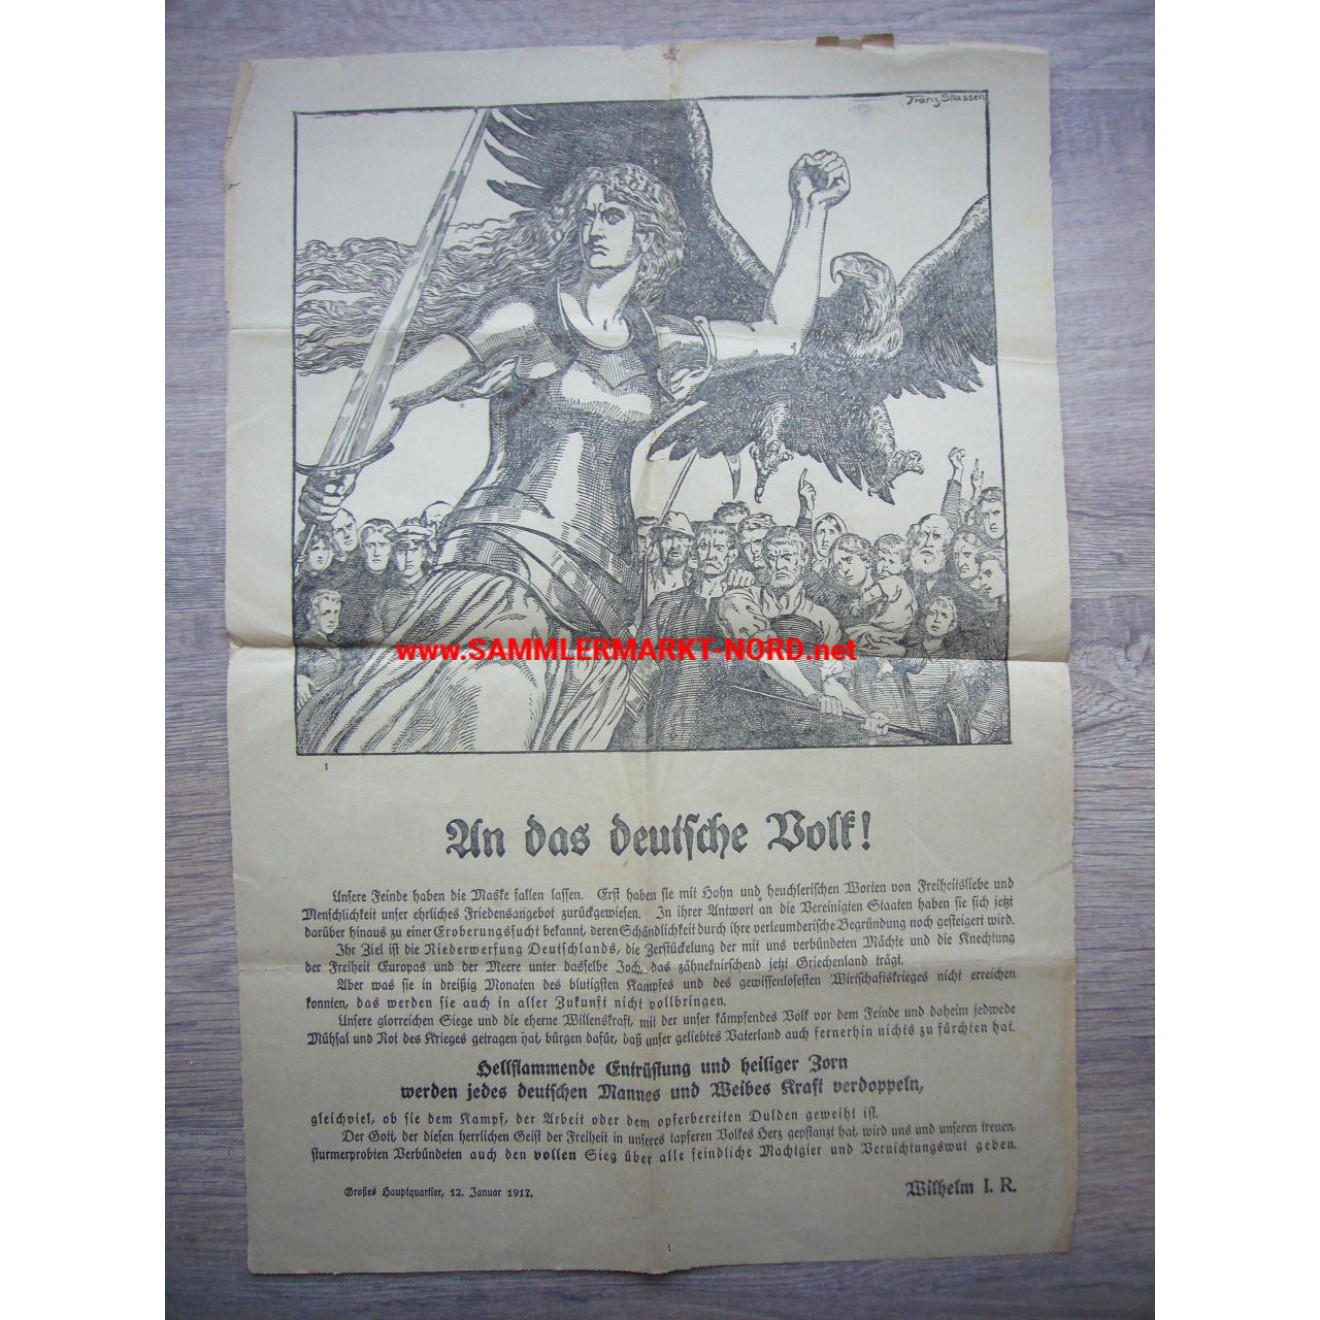 An das deutsche Volk! - Großes Hauptquartier (GHQ) 1917 - Plakat